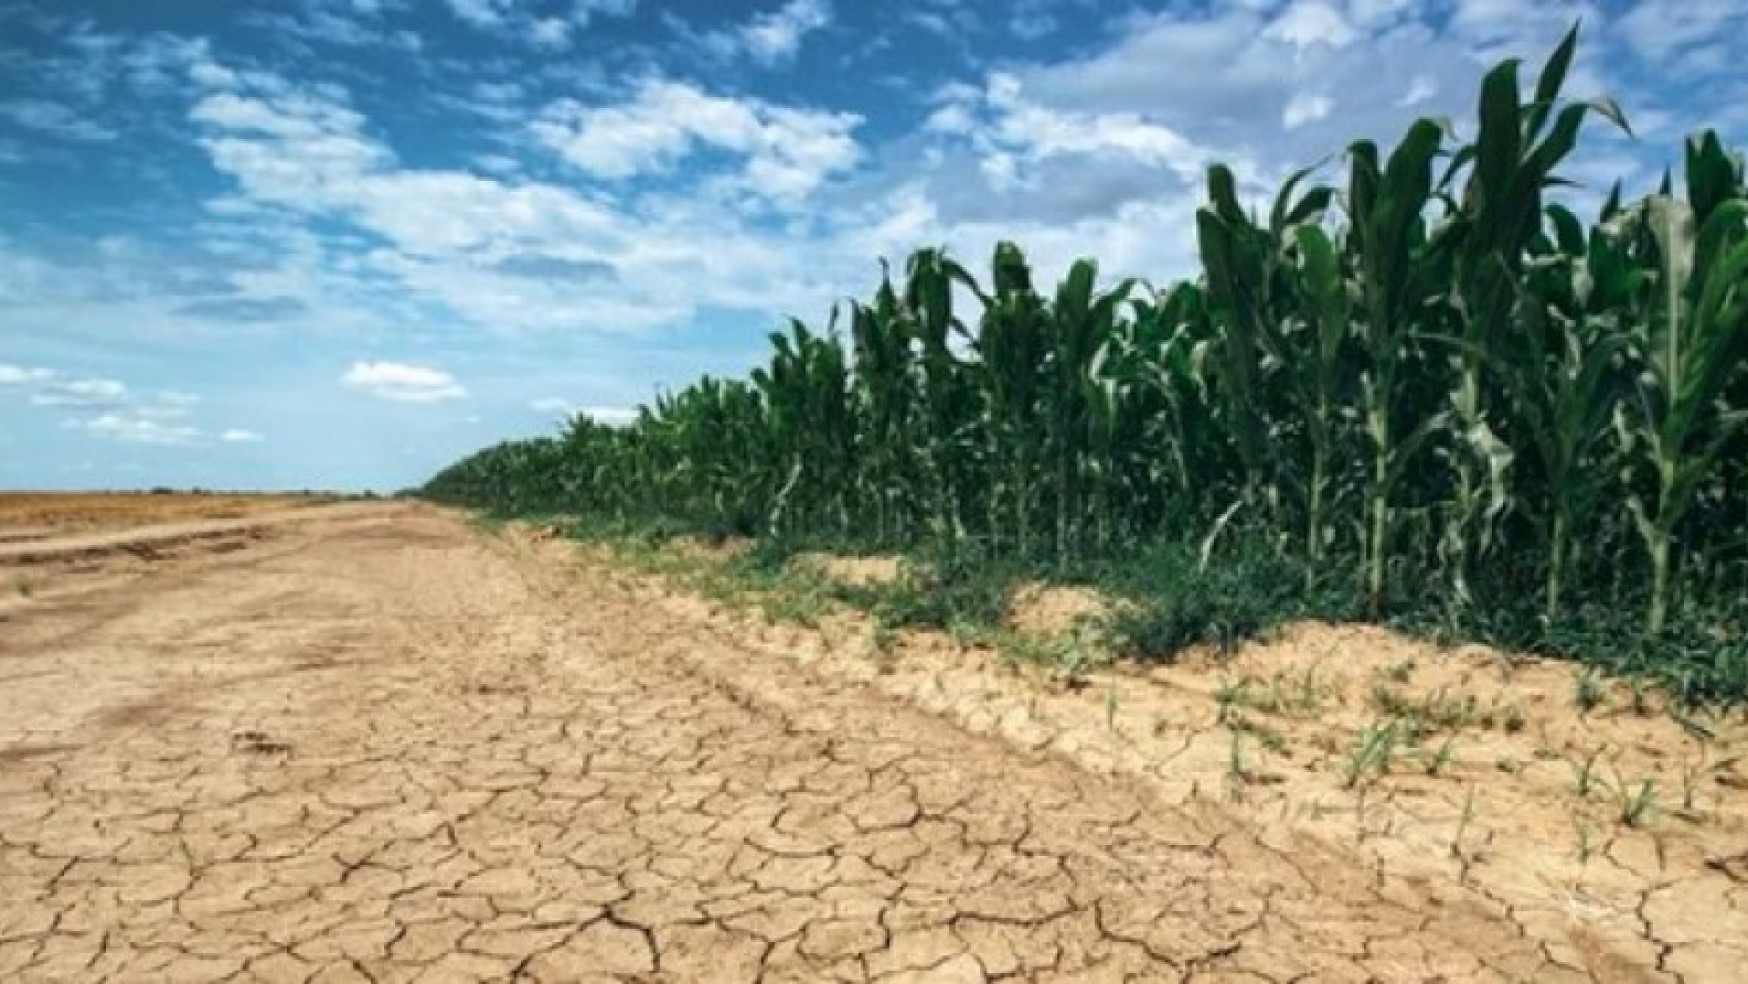 INTESA SANPAOLO: UN PLAFOND DI 100 MILIONI ALLE IMPRESE AGRICOLE DANNEGGIATE DALLA SICCITA’